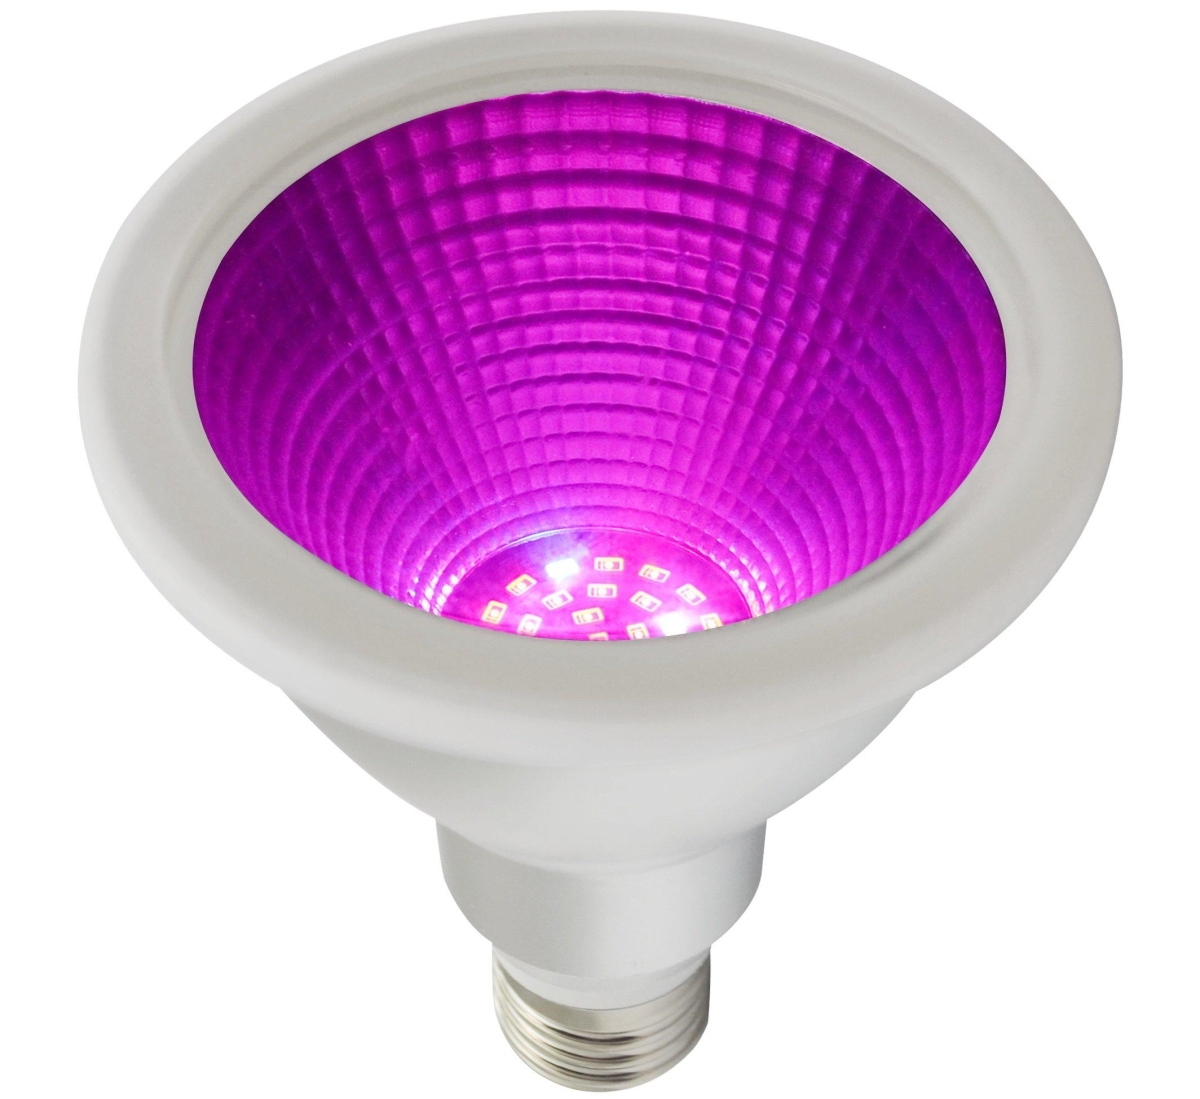 PR Home Grow LED Pflanzenlampe E27 PAR30 Leuchtmittel 12W IP65 30° 450umol/m²s 450nm/620-630nm